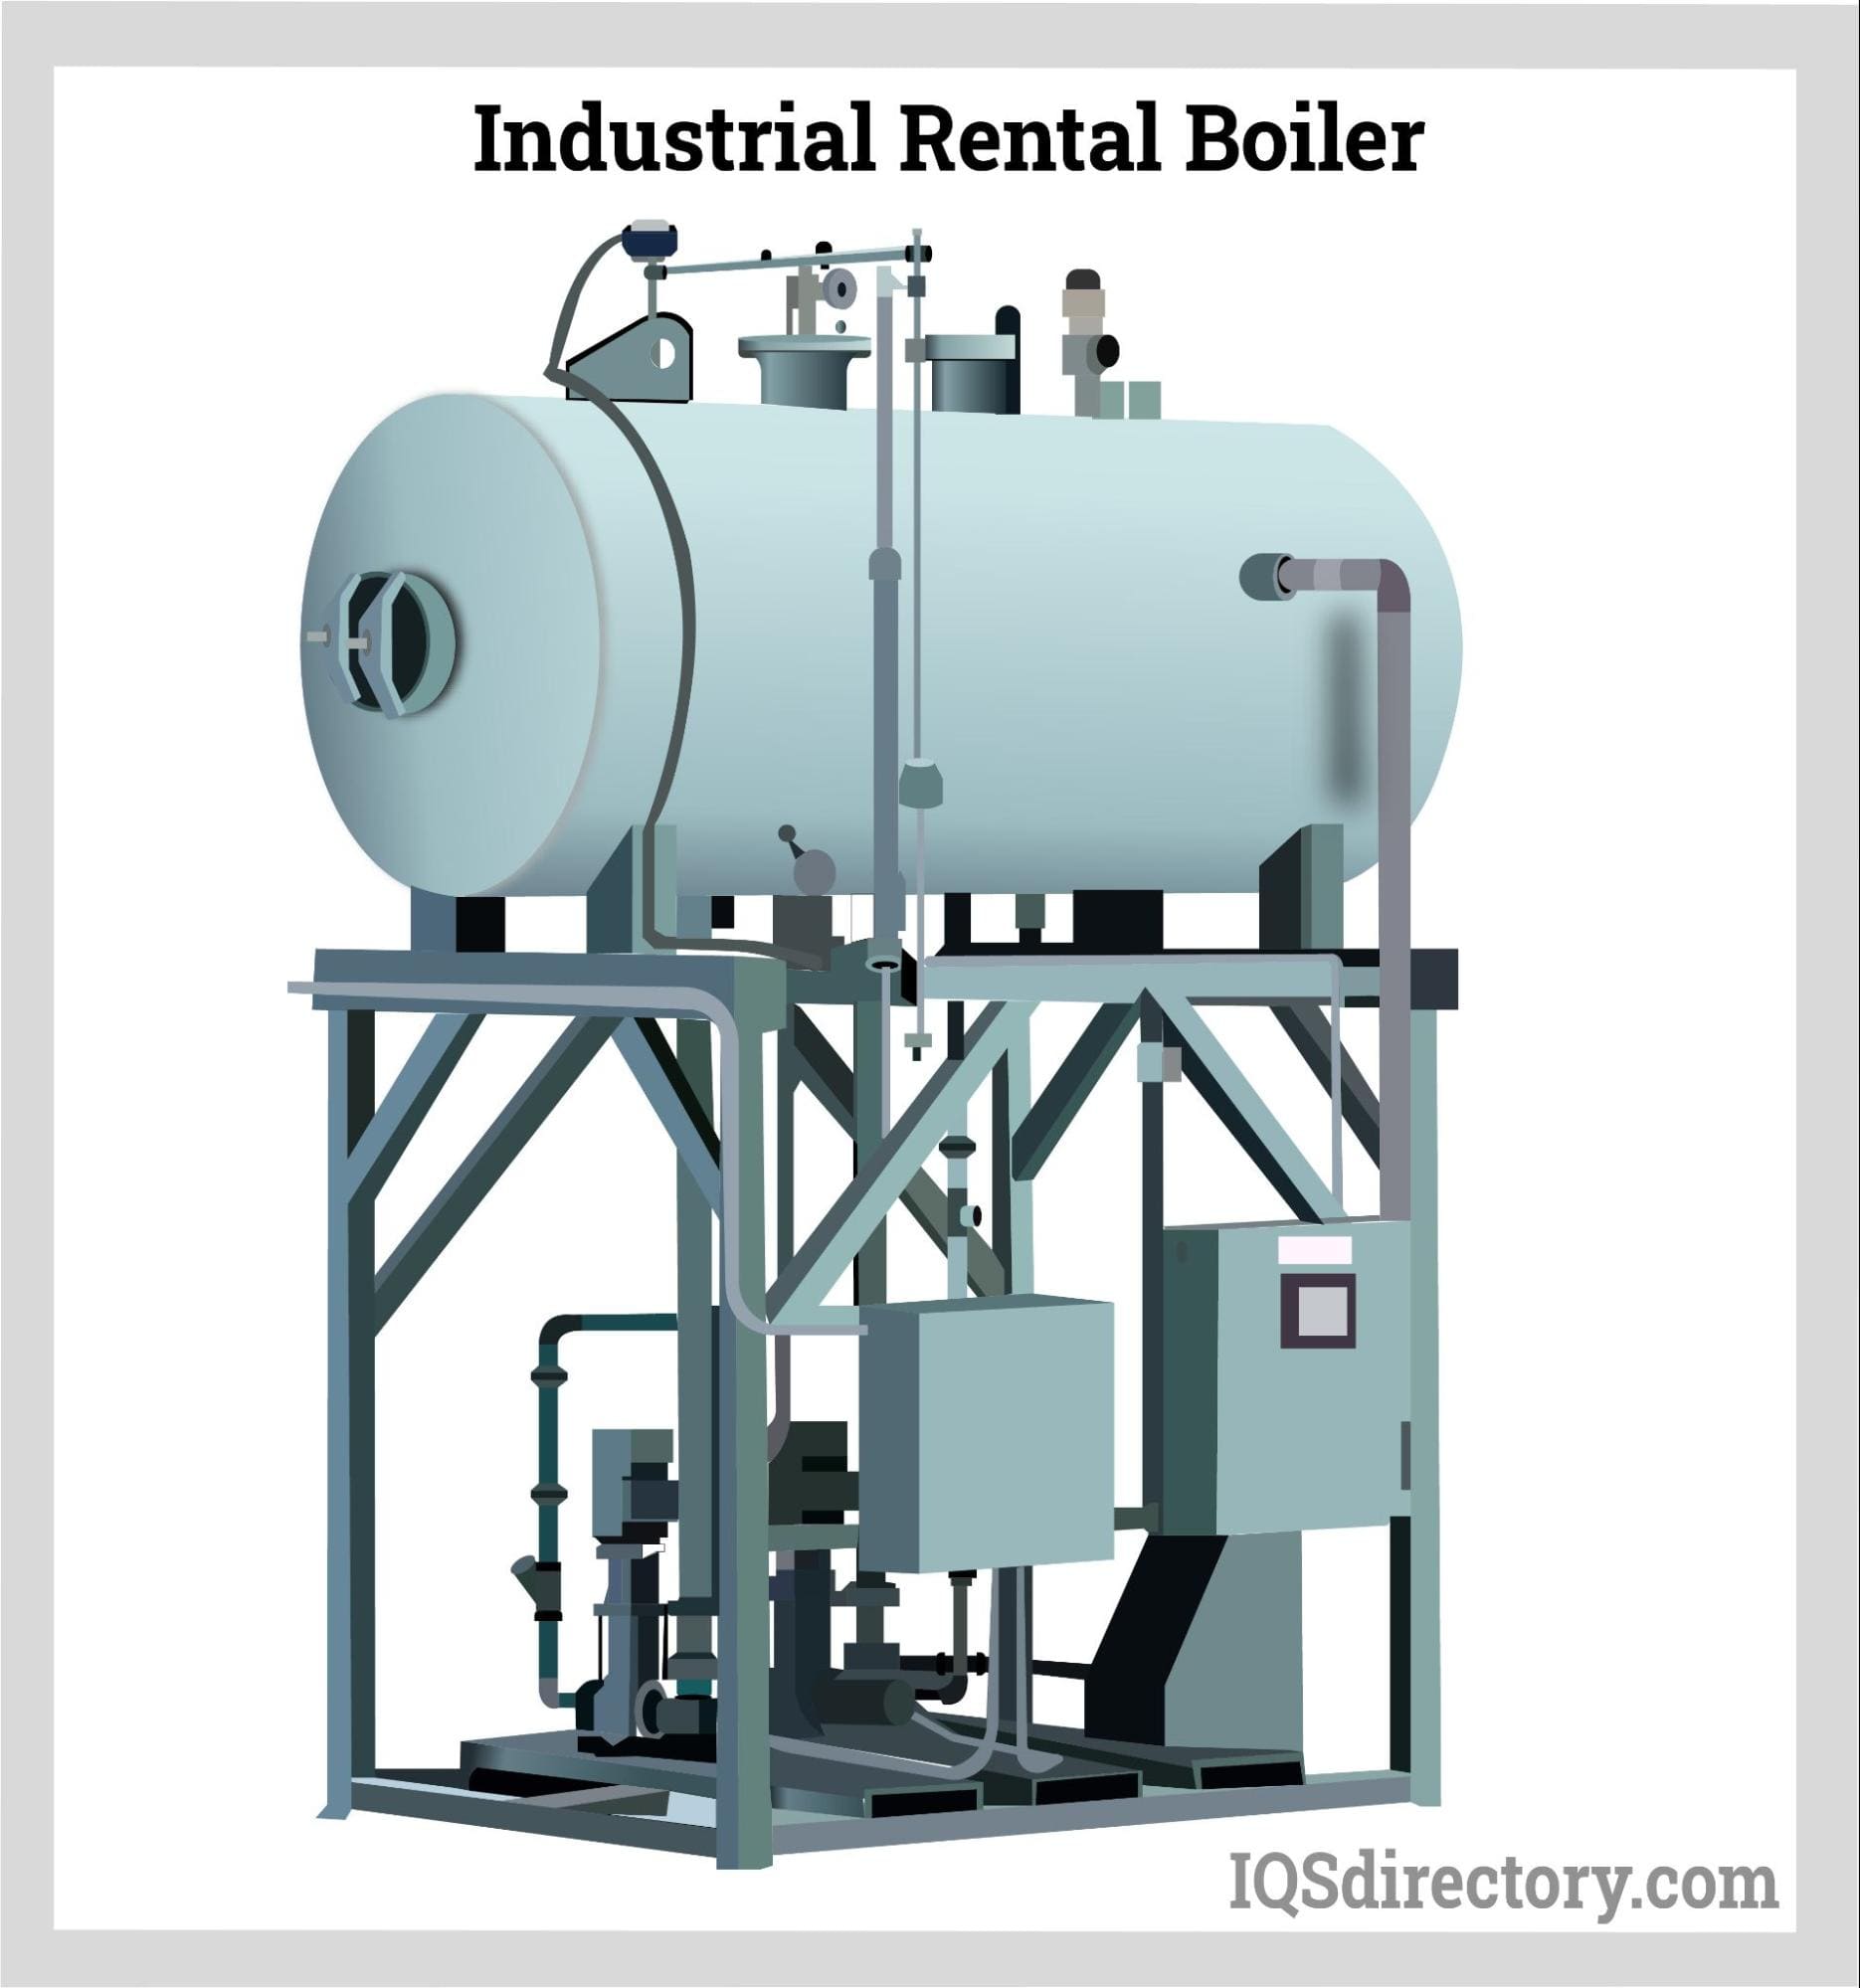 Industrial Rental Boiler